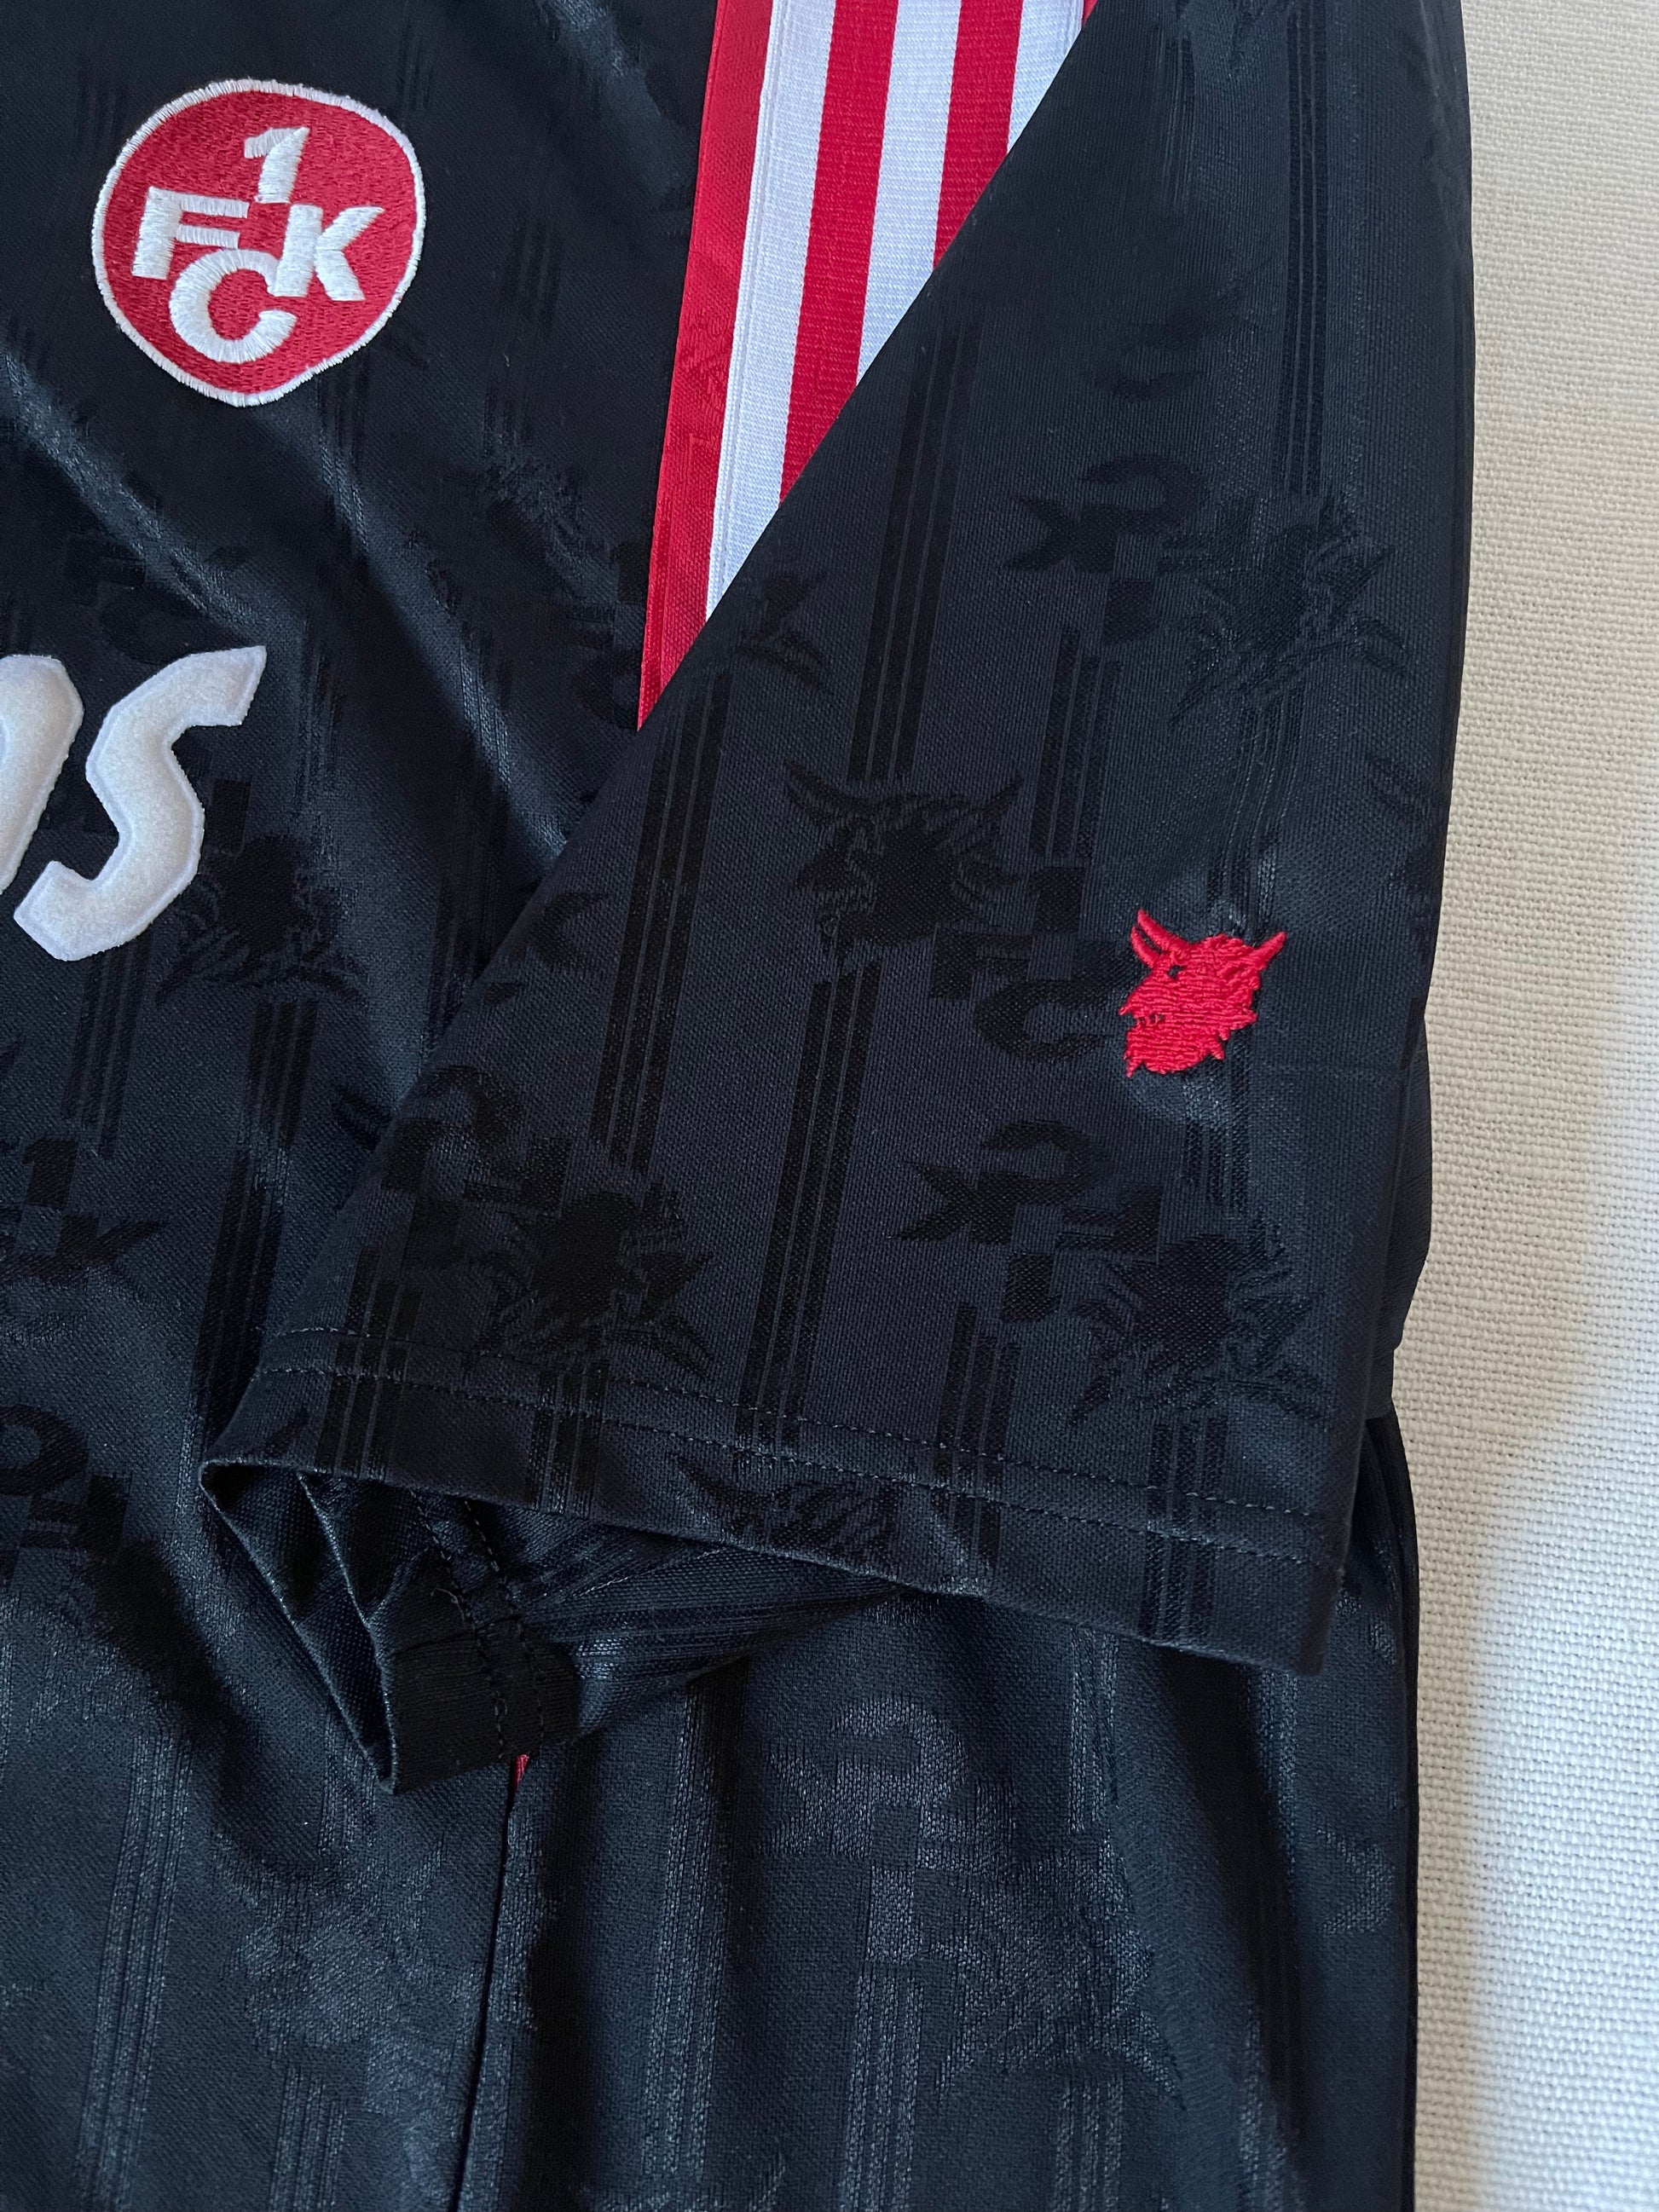 Kaiserslautern FCK Adidas 1996 - 1997 - 1998 Away Football Shirt Black Red White Size XL - XXL Crunchips